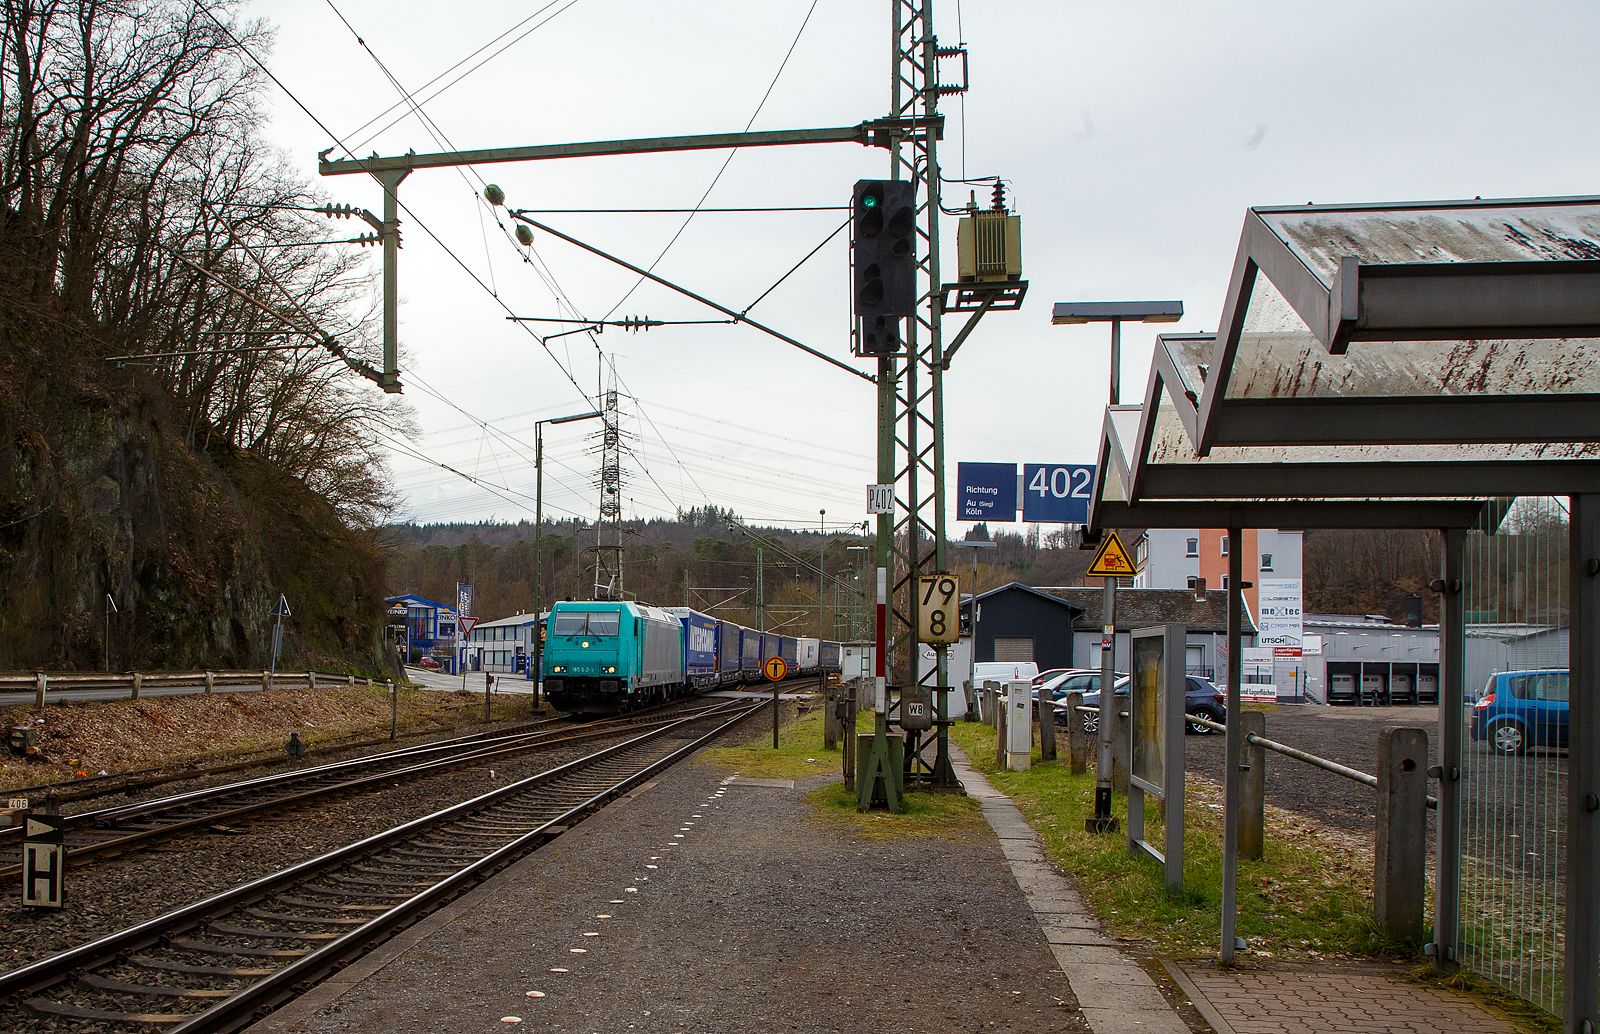 Die an die RTB CARGO GmbH vermietete 185 612-9 (91 80 6185 612-9 D-ATLU) der Alpha Trains Luxembourg No.2 S.à r.l. fährt am 17.03.2023, mit einem KLV-Zug, durch Scheuerfeld (Sieg) in Richtung Siegen. Leider war mir ein weiteres Bild von Ihr unmöglich, da sie von einer DB 193er mit einem KLV-Zug in Gegenrichtung zugefahren wurde.

Die TRAXX F 140 AC2 wurde 2008 von der Bombardier Transportation GmbH in Kassel unter der Fabriknummer 34263 gebaut.
